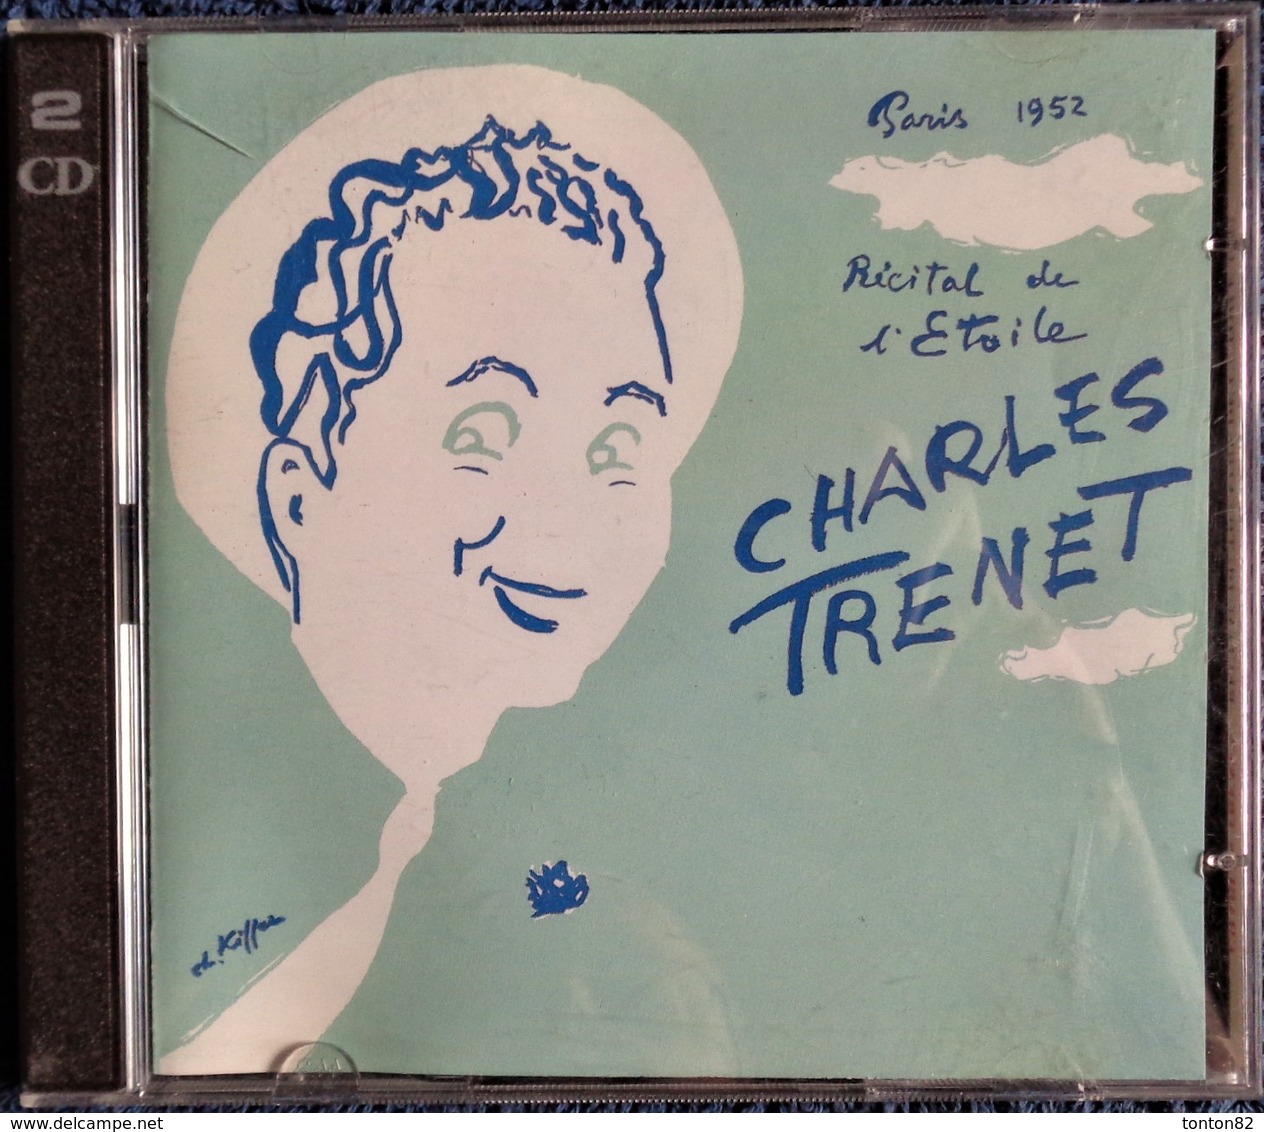 Charles Trenet - Récital De L'Étoile - Paris 1952 - Deux CD - 28 Titres . - Autres - Musique Française